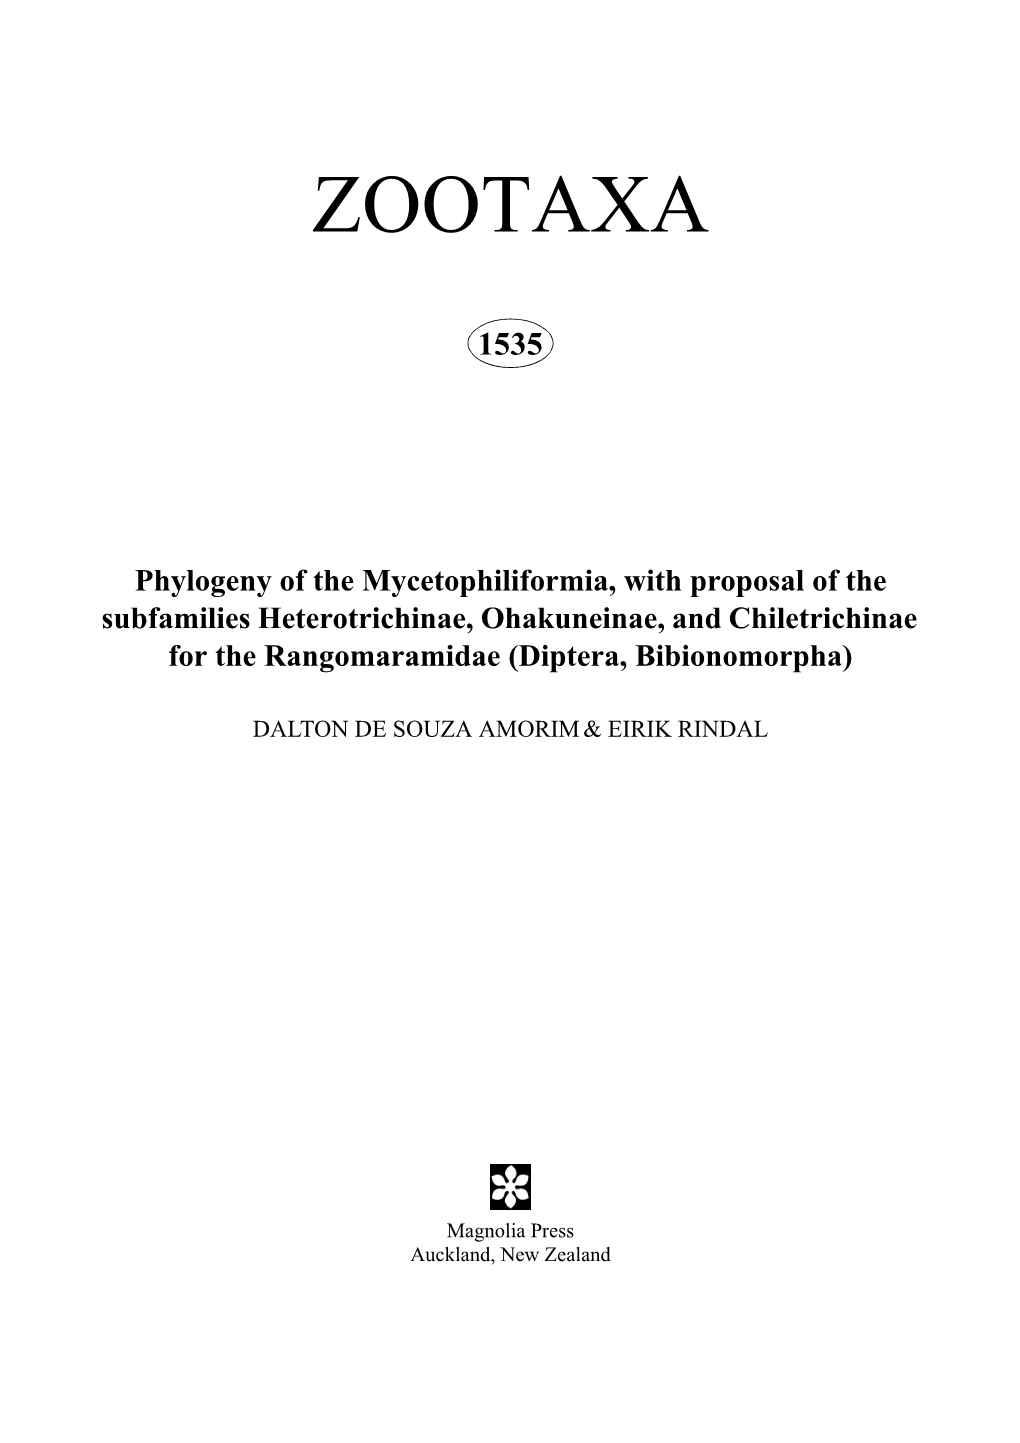 Zootaxa, Phylogeny of the Mycetophiliformia